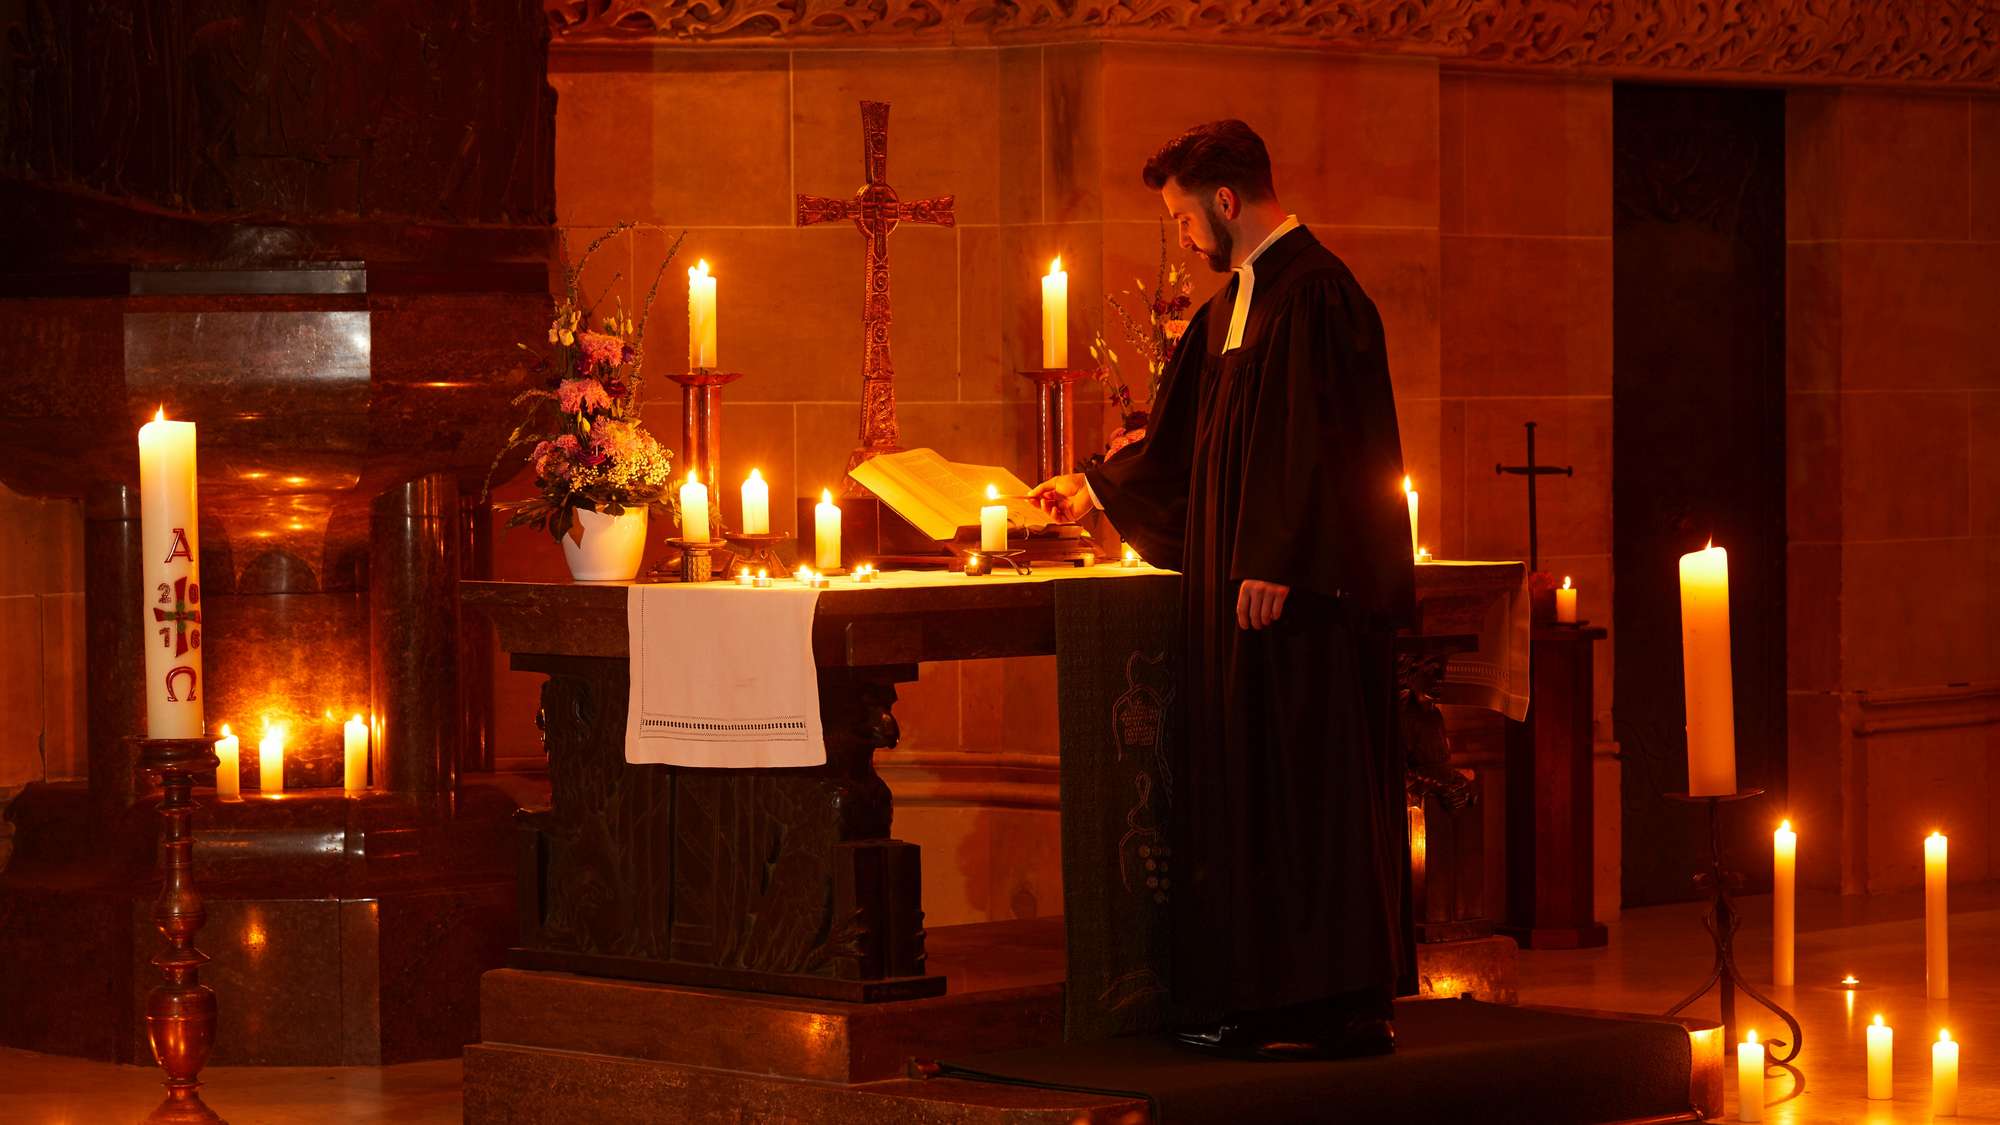 Ein Pfarrer steht in einer von Kerzen erleuchteten Kirche am Altar.